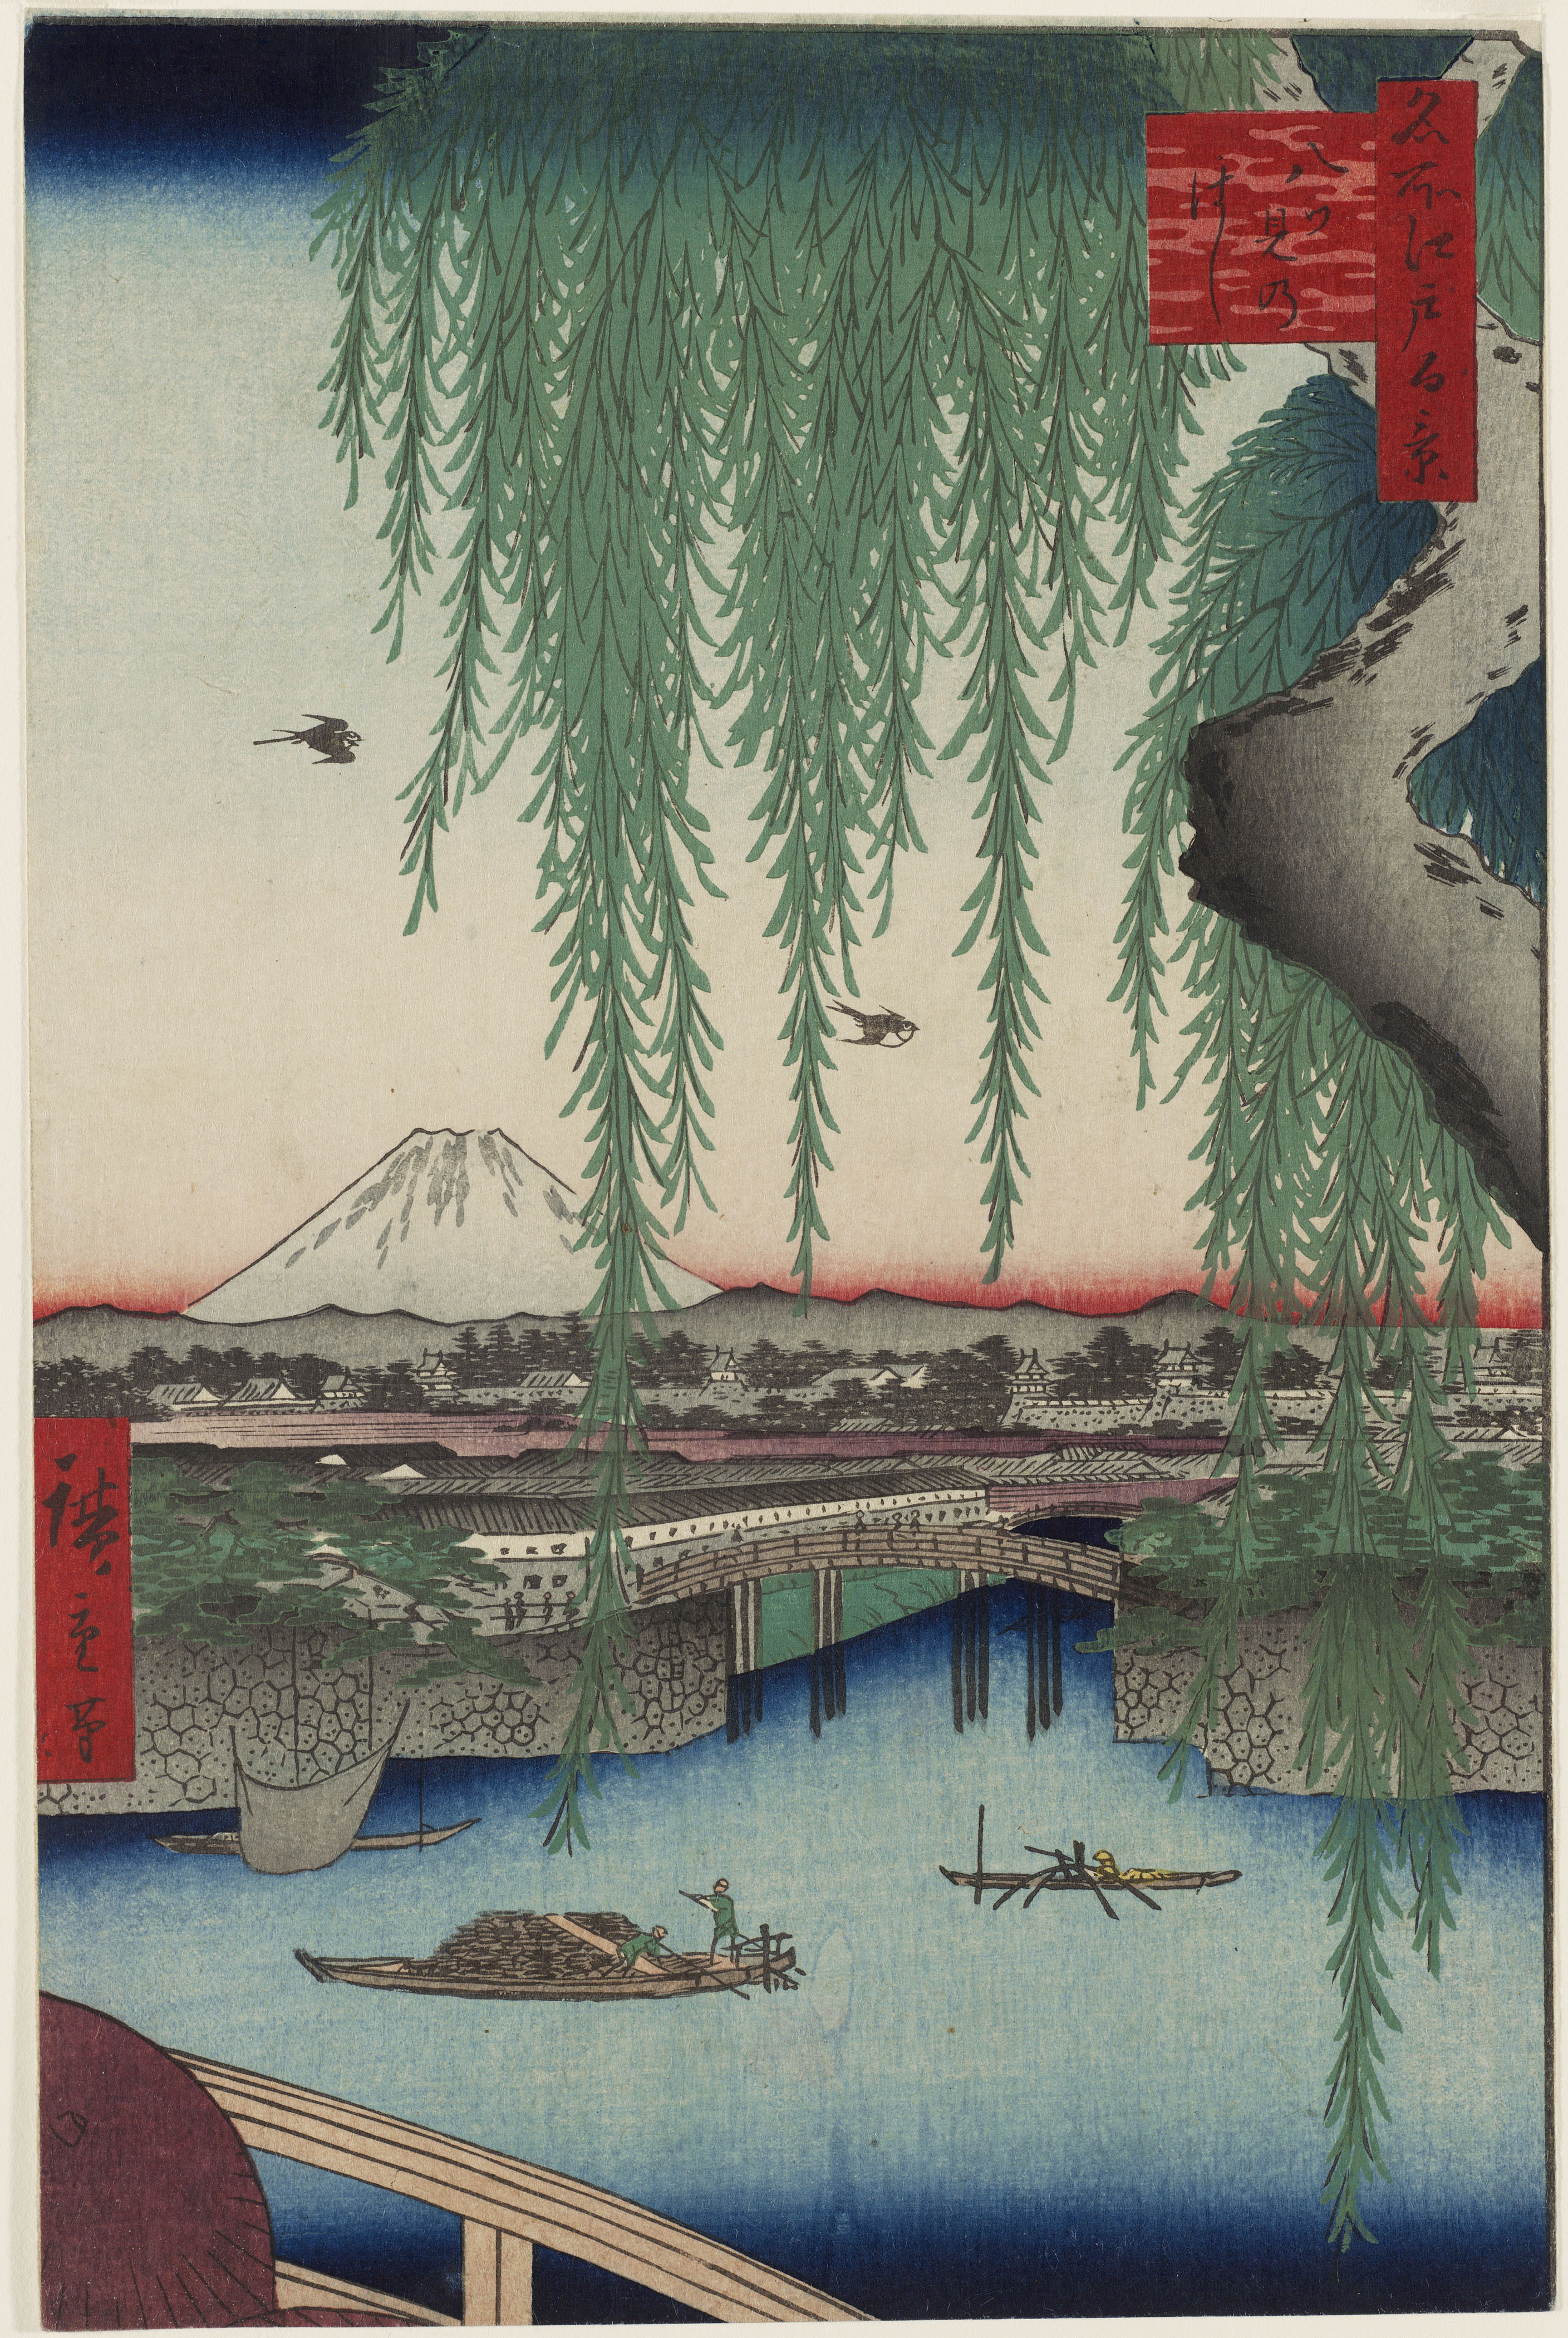 05. Hiroshige